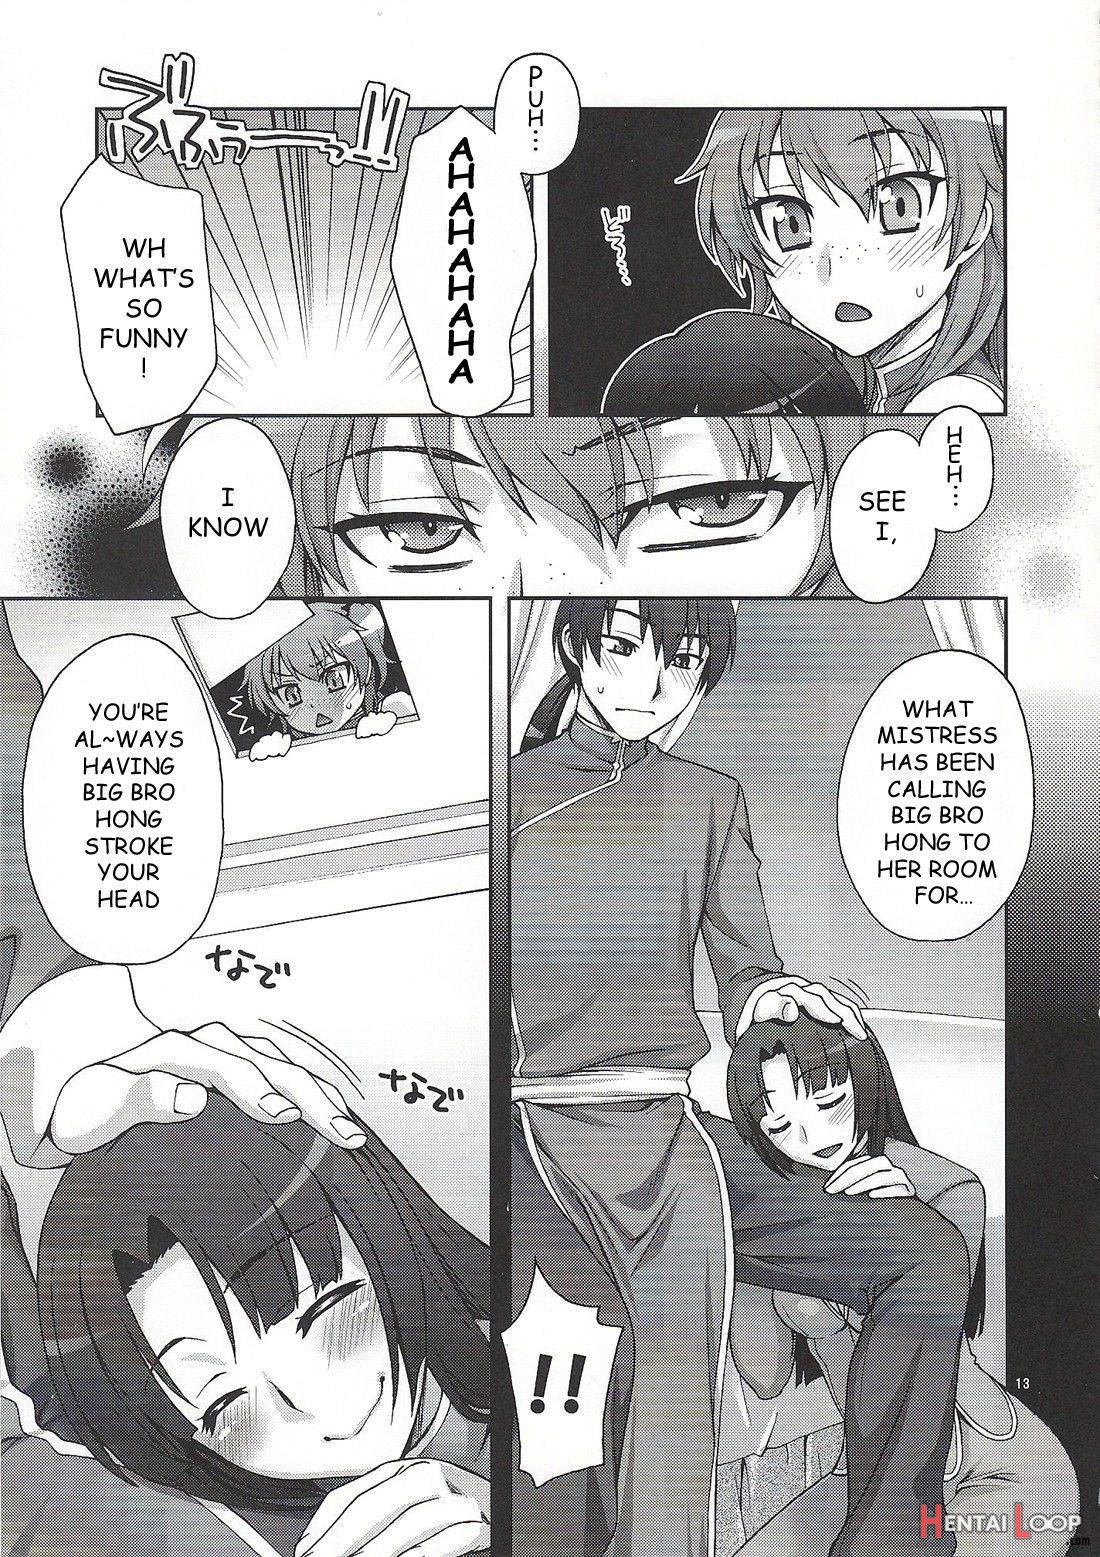 Daisuki! Onii-sama page 10